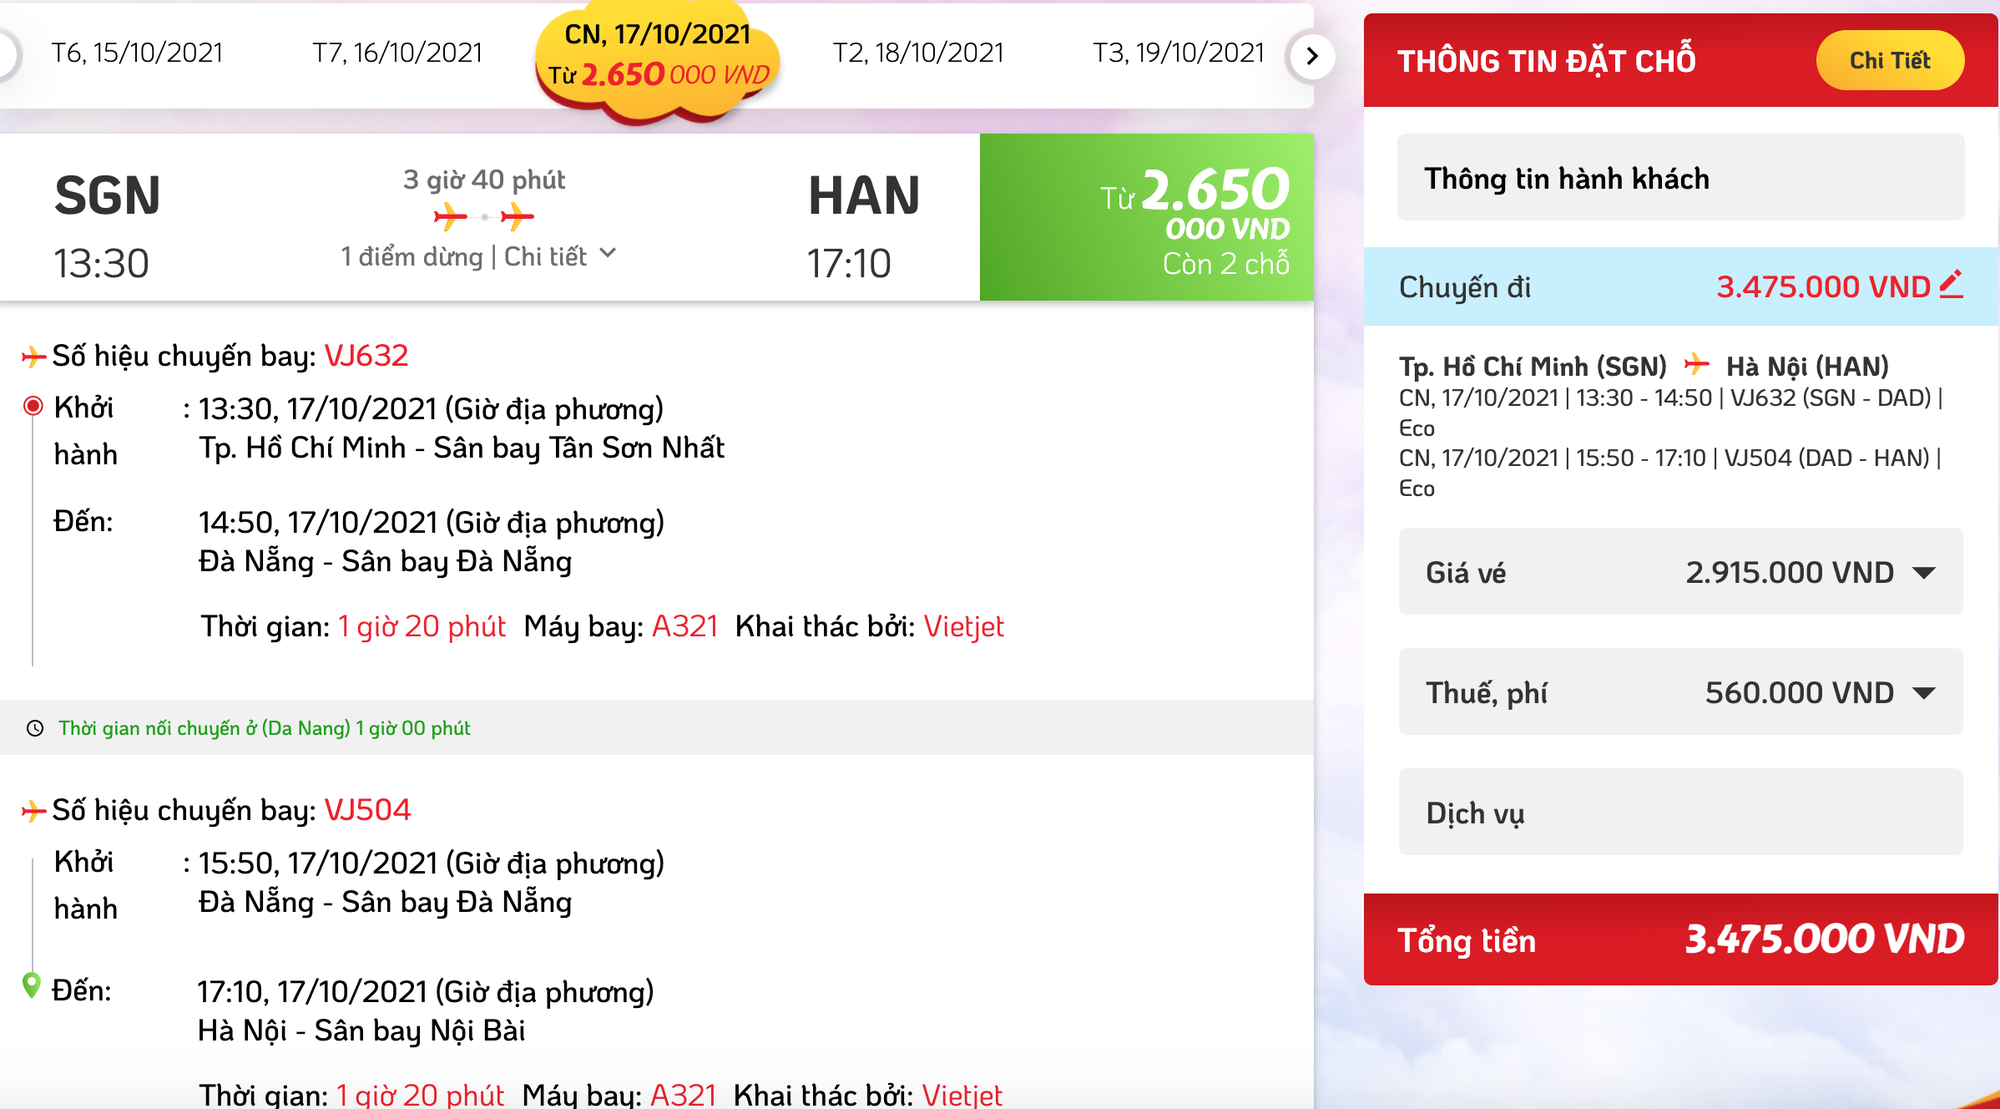 Cháy vé chuyến bay TP. HCM - Hà Nội đến 19/10, giá tăng tới 7,6 triệu đồng - Ảnh 2.